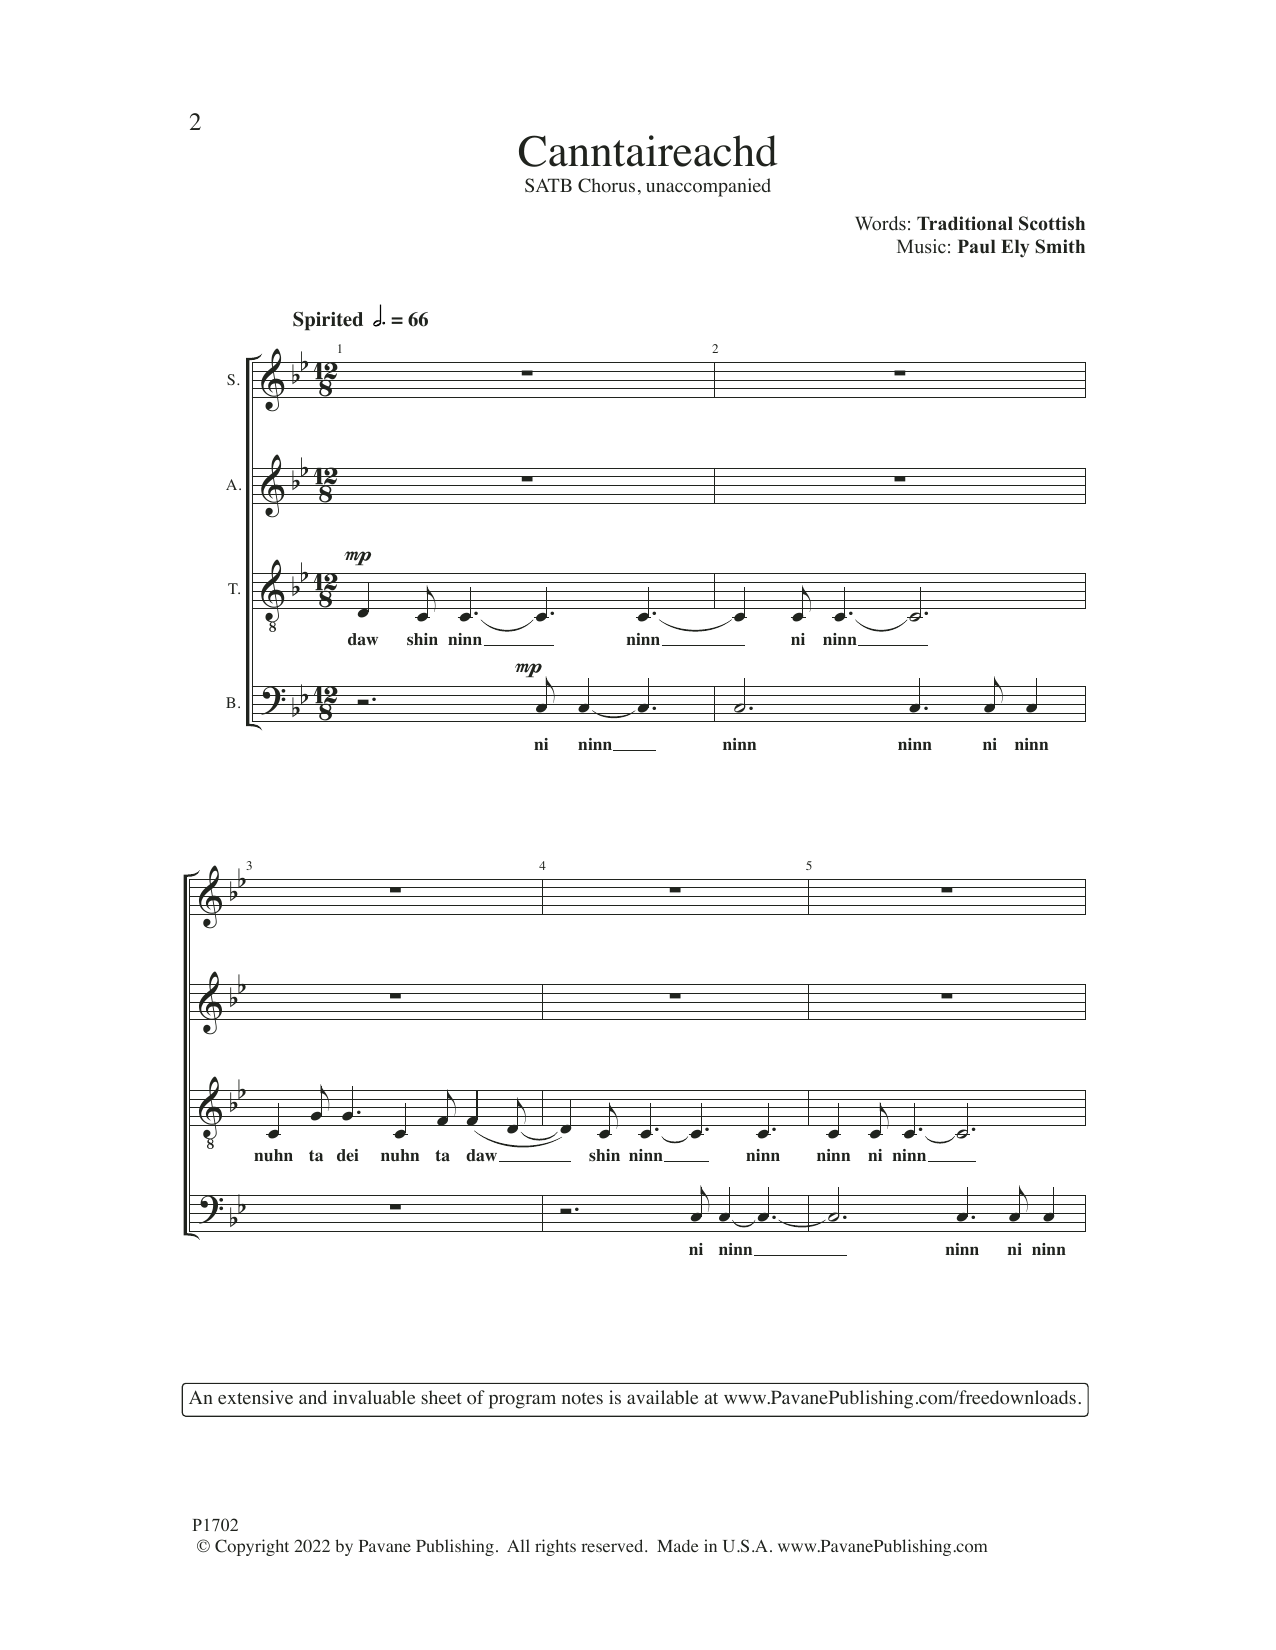 Chanticleer Canntaireachd Sheet Music Notes & Chords for SATB Choir - Download or Print PDF